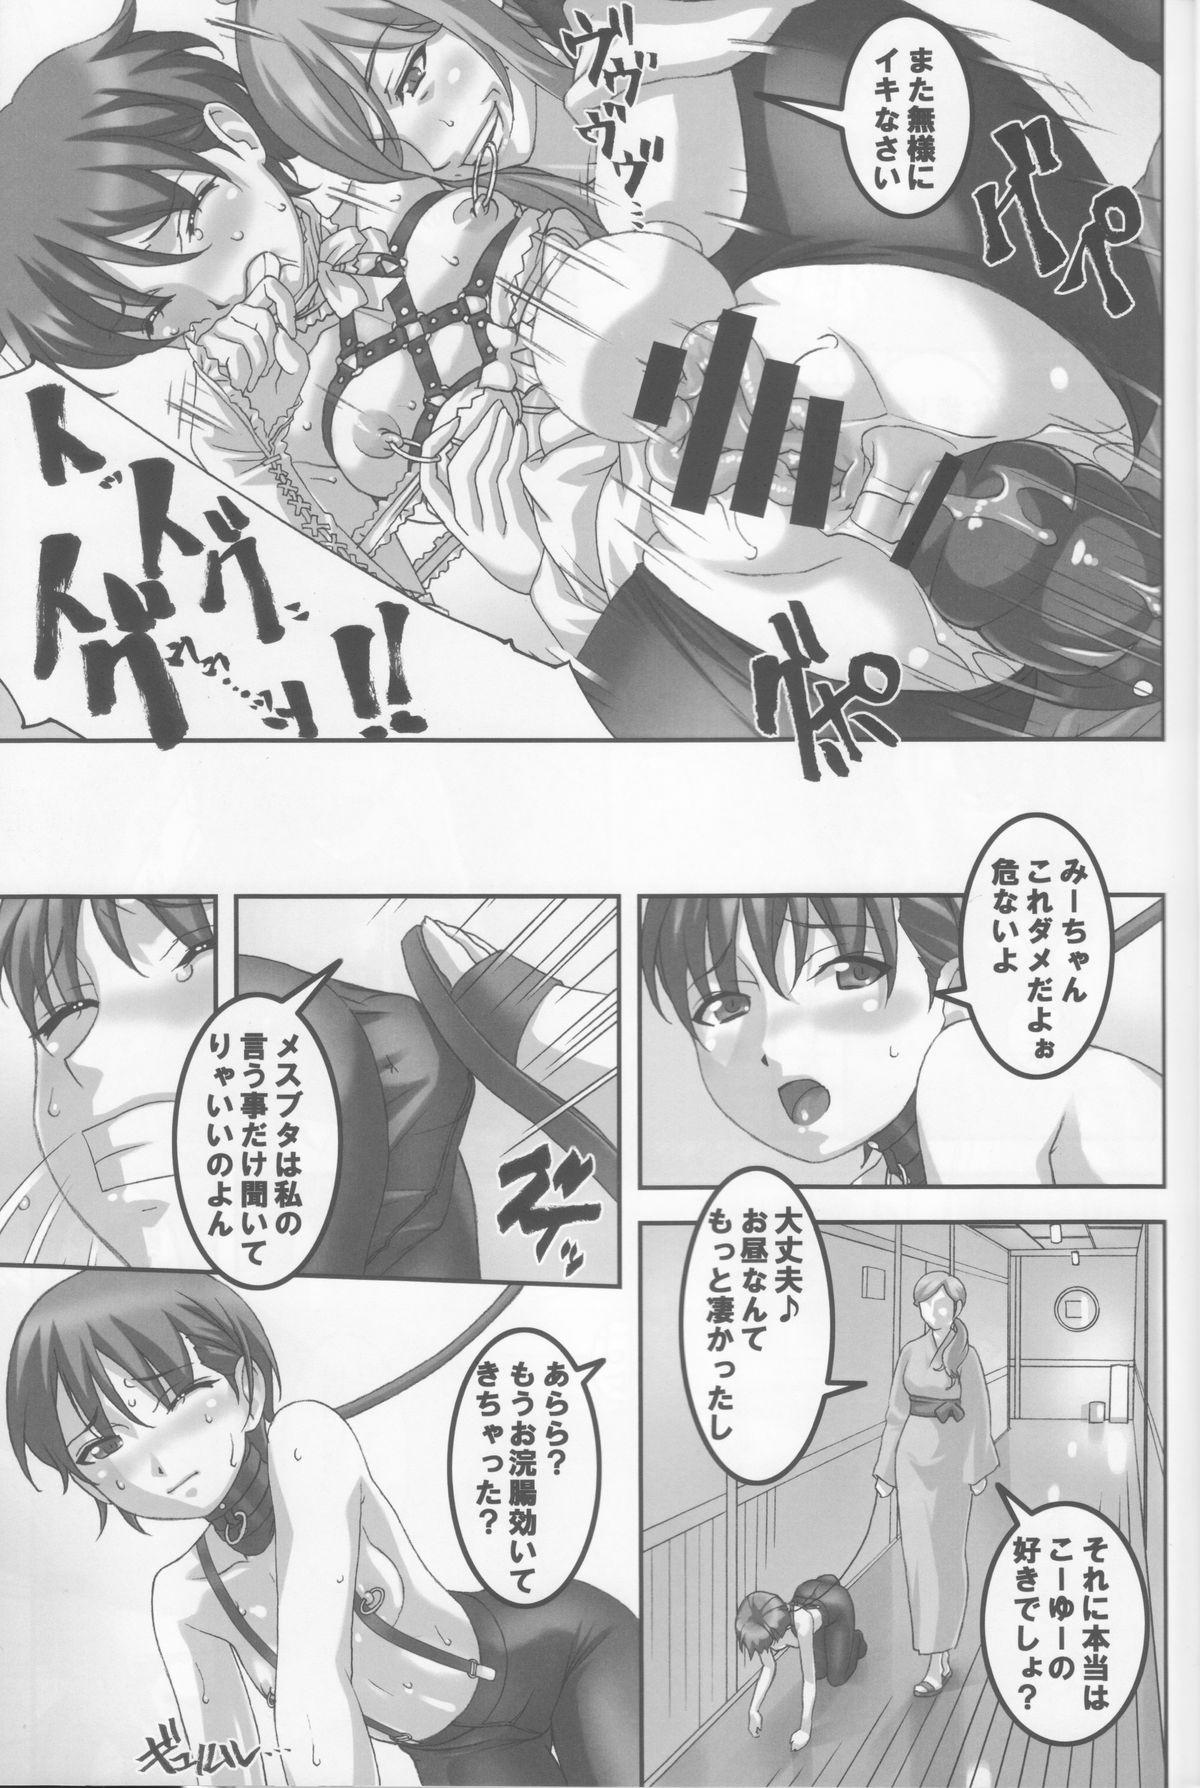 Anoko ga Natsuyasumi ni Ryokou saki de Oshiri no Ana wo Kizetsu suru hodo Naburare tsuzukeru Manga 15